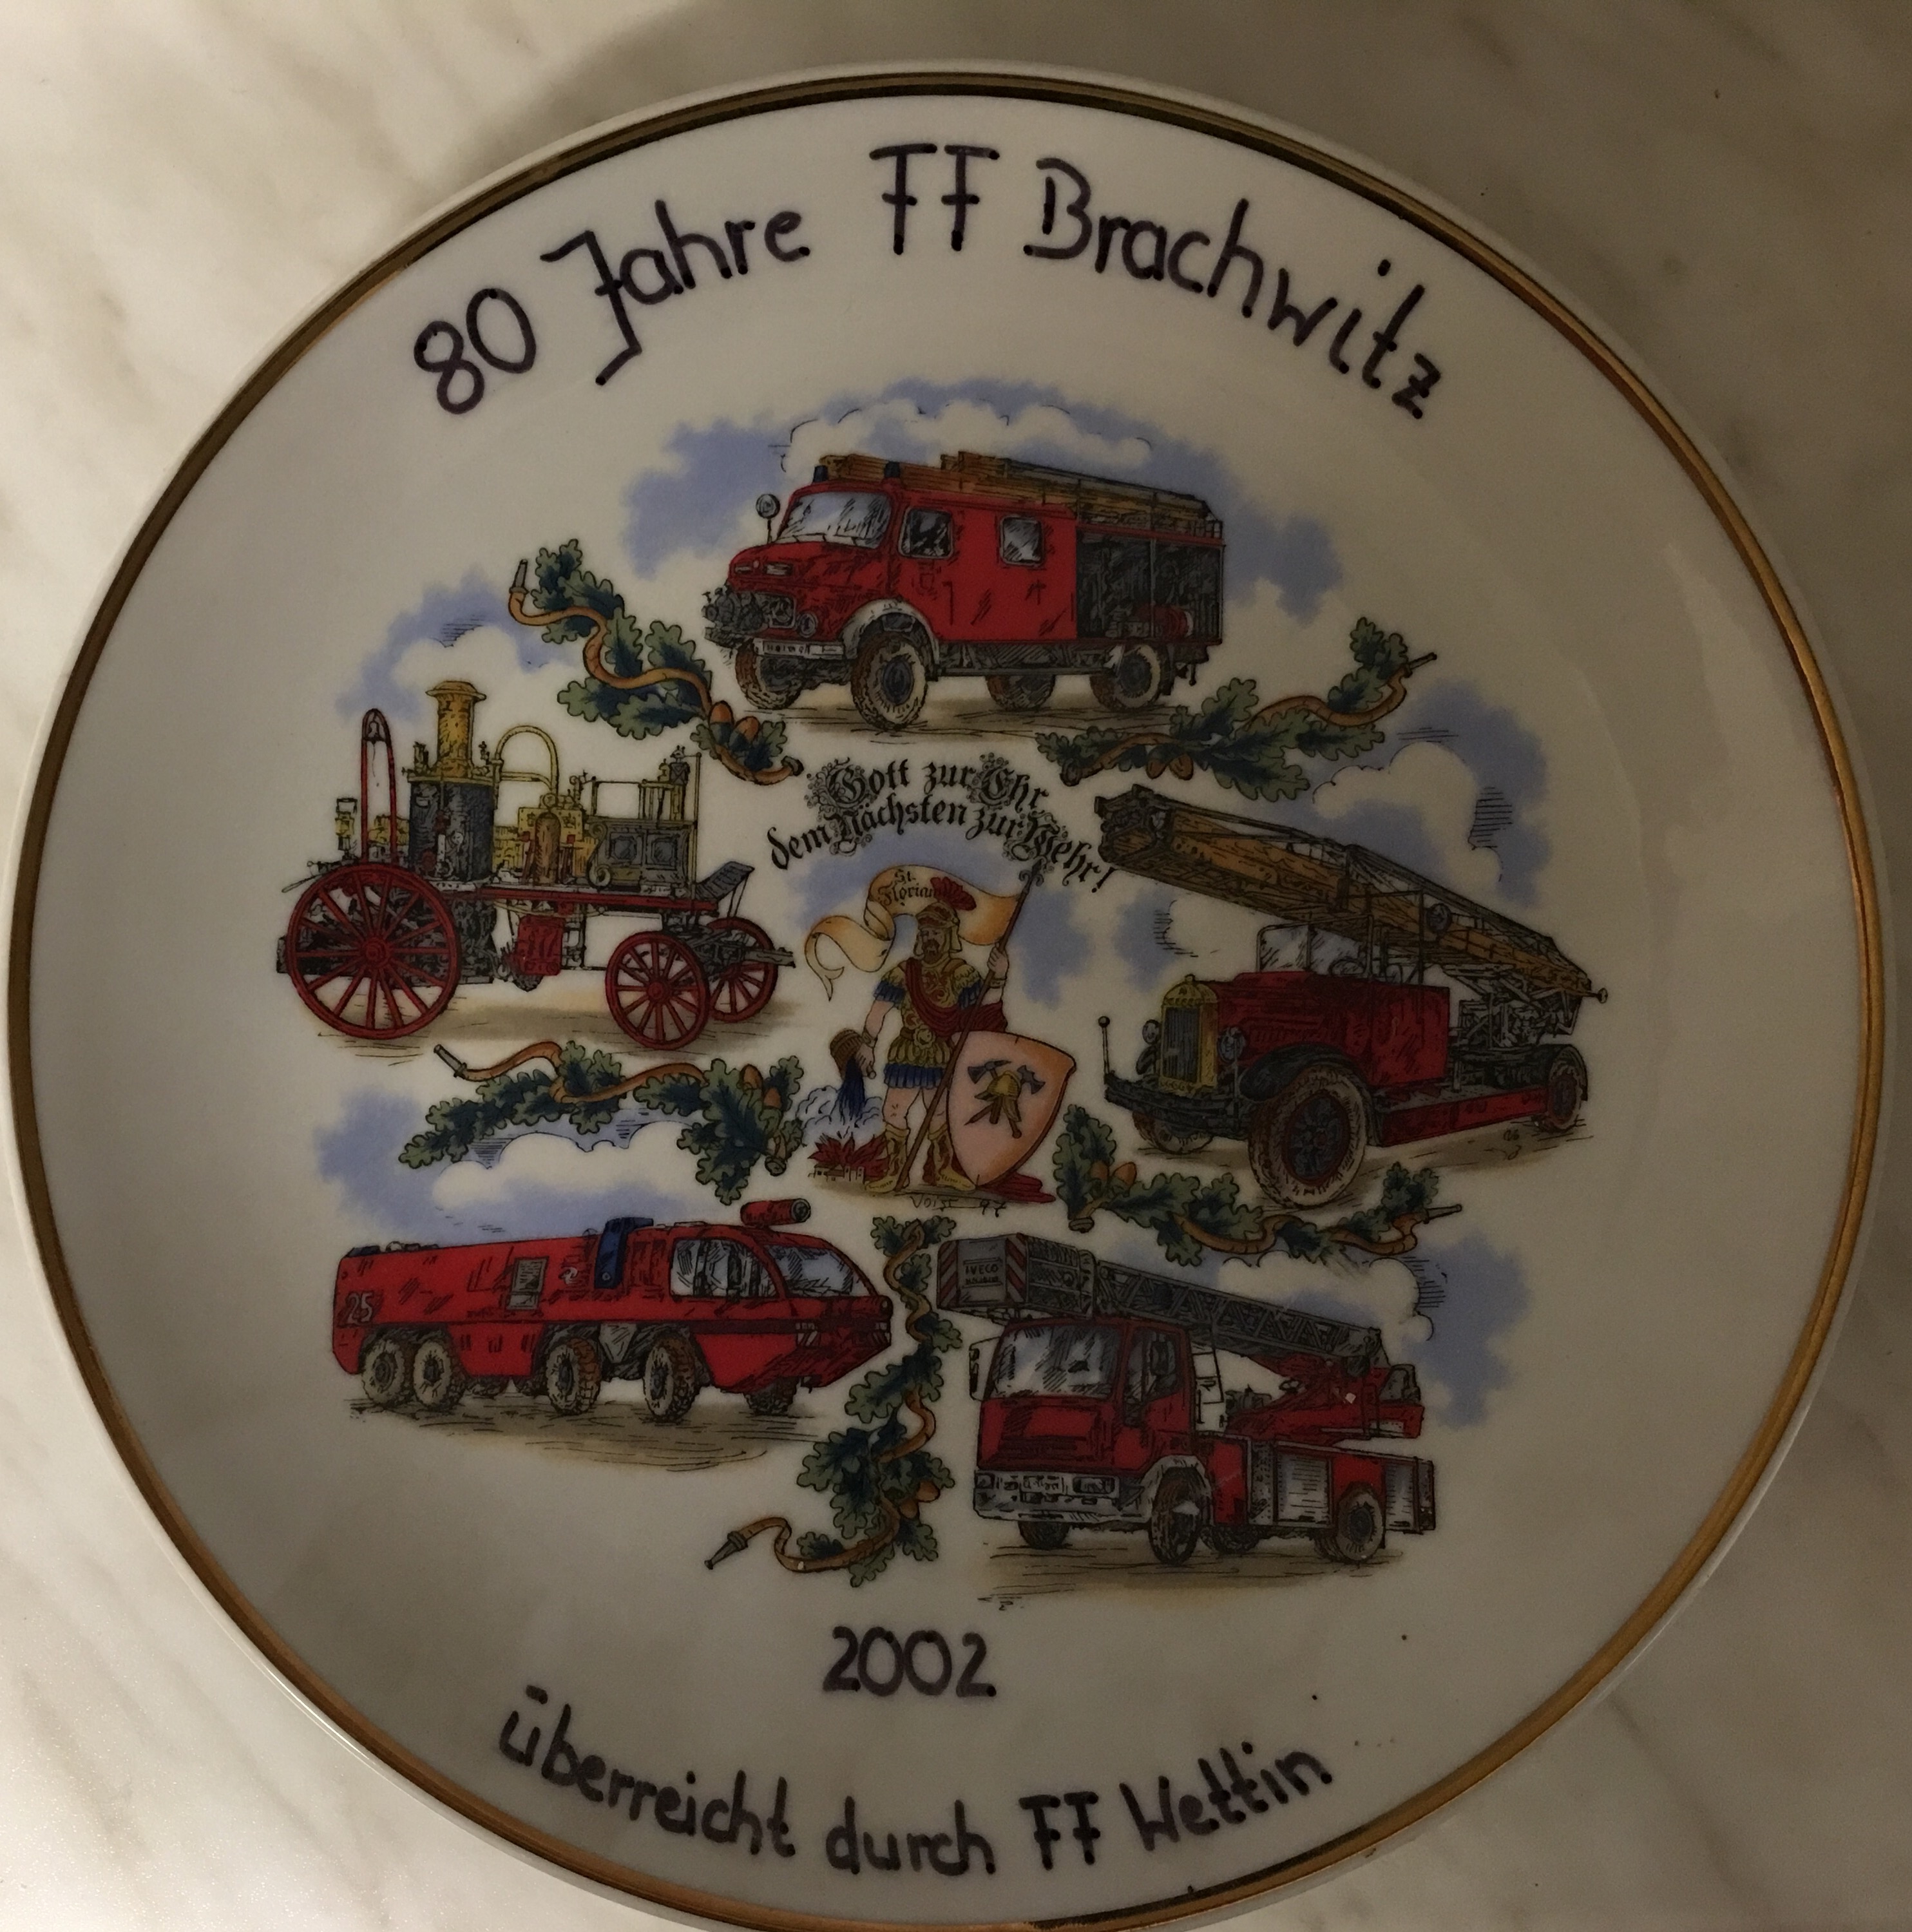 80 Jahre Feuerwehr Brachwitz